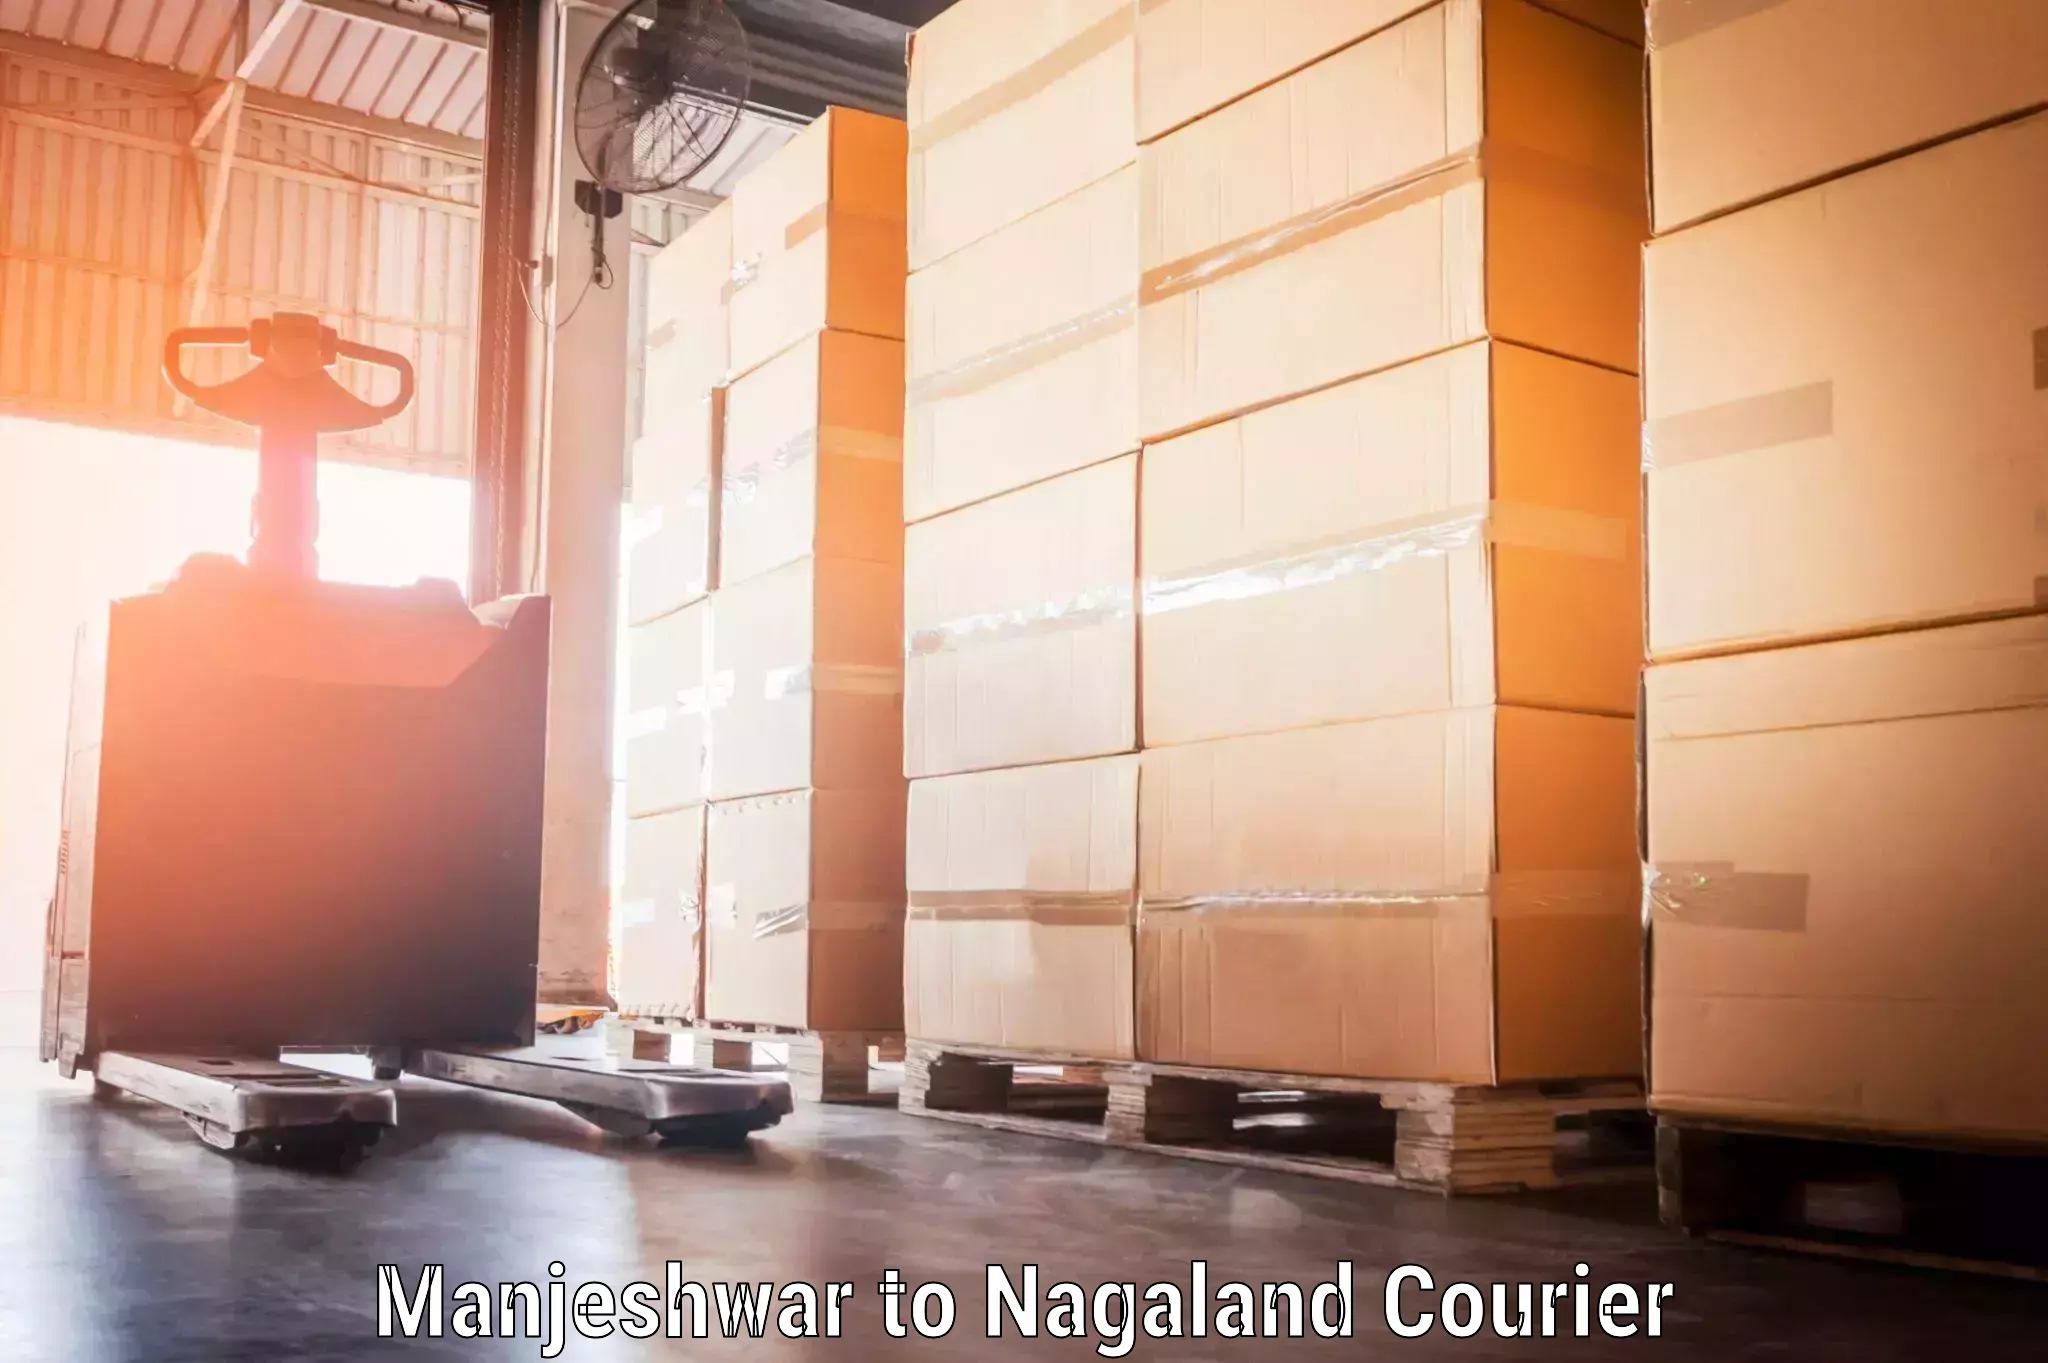 Baggage delivery solutions Manjeshwar to Nagaland